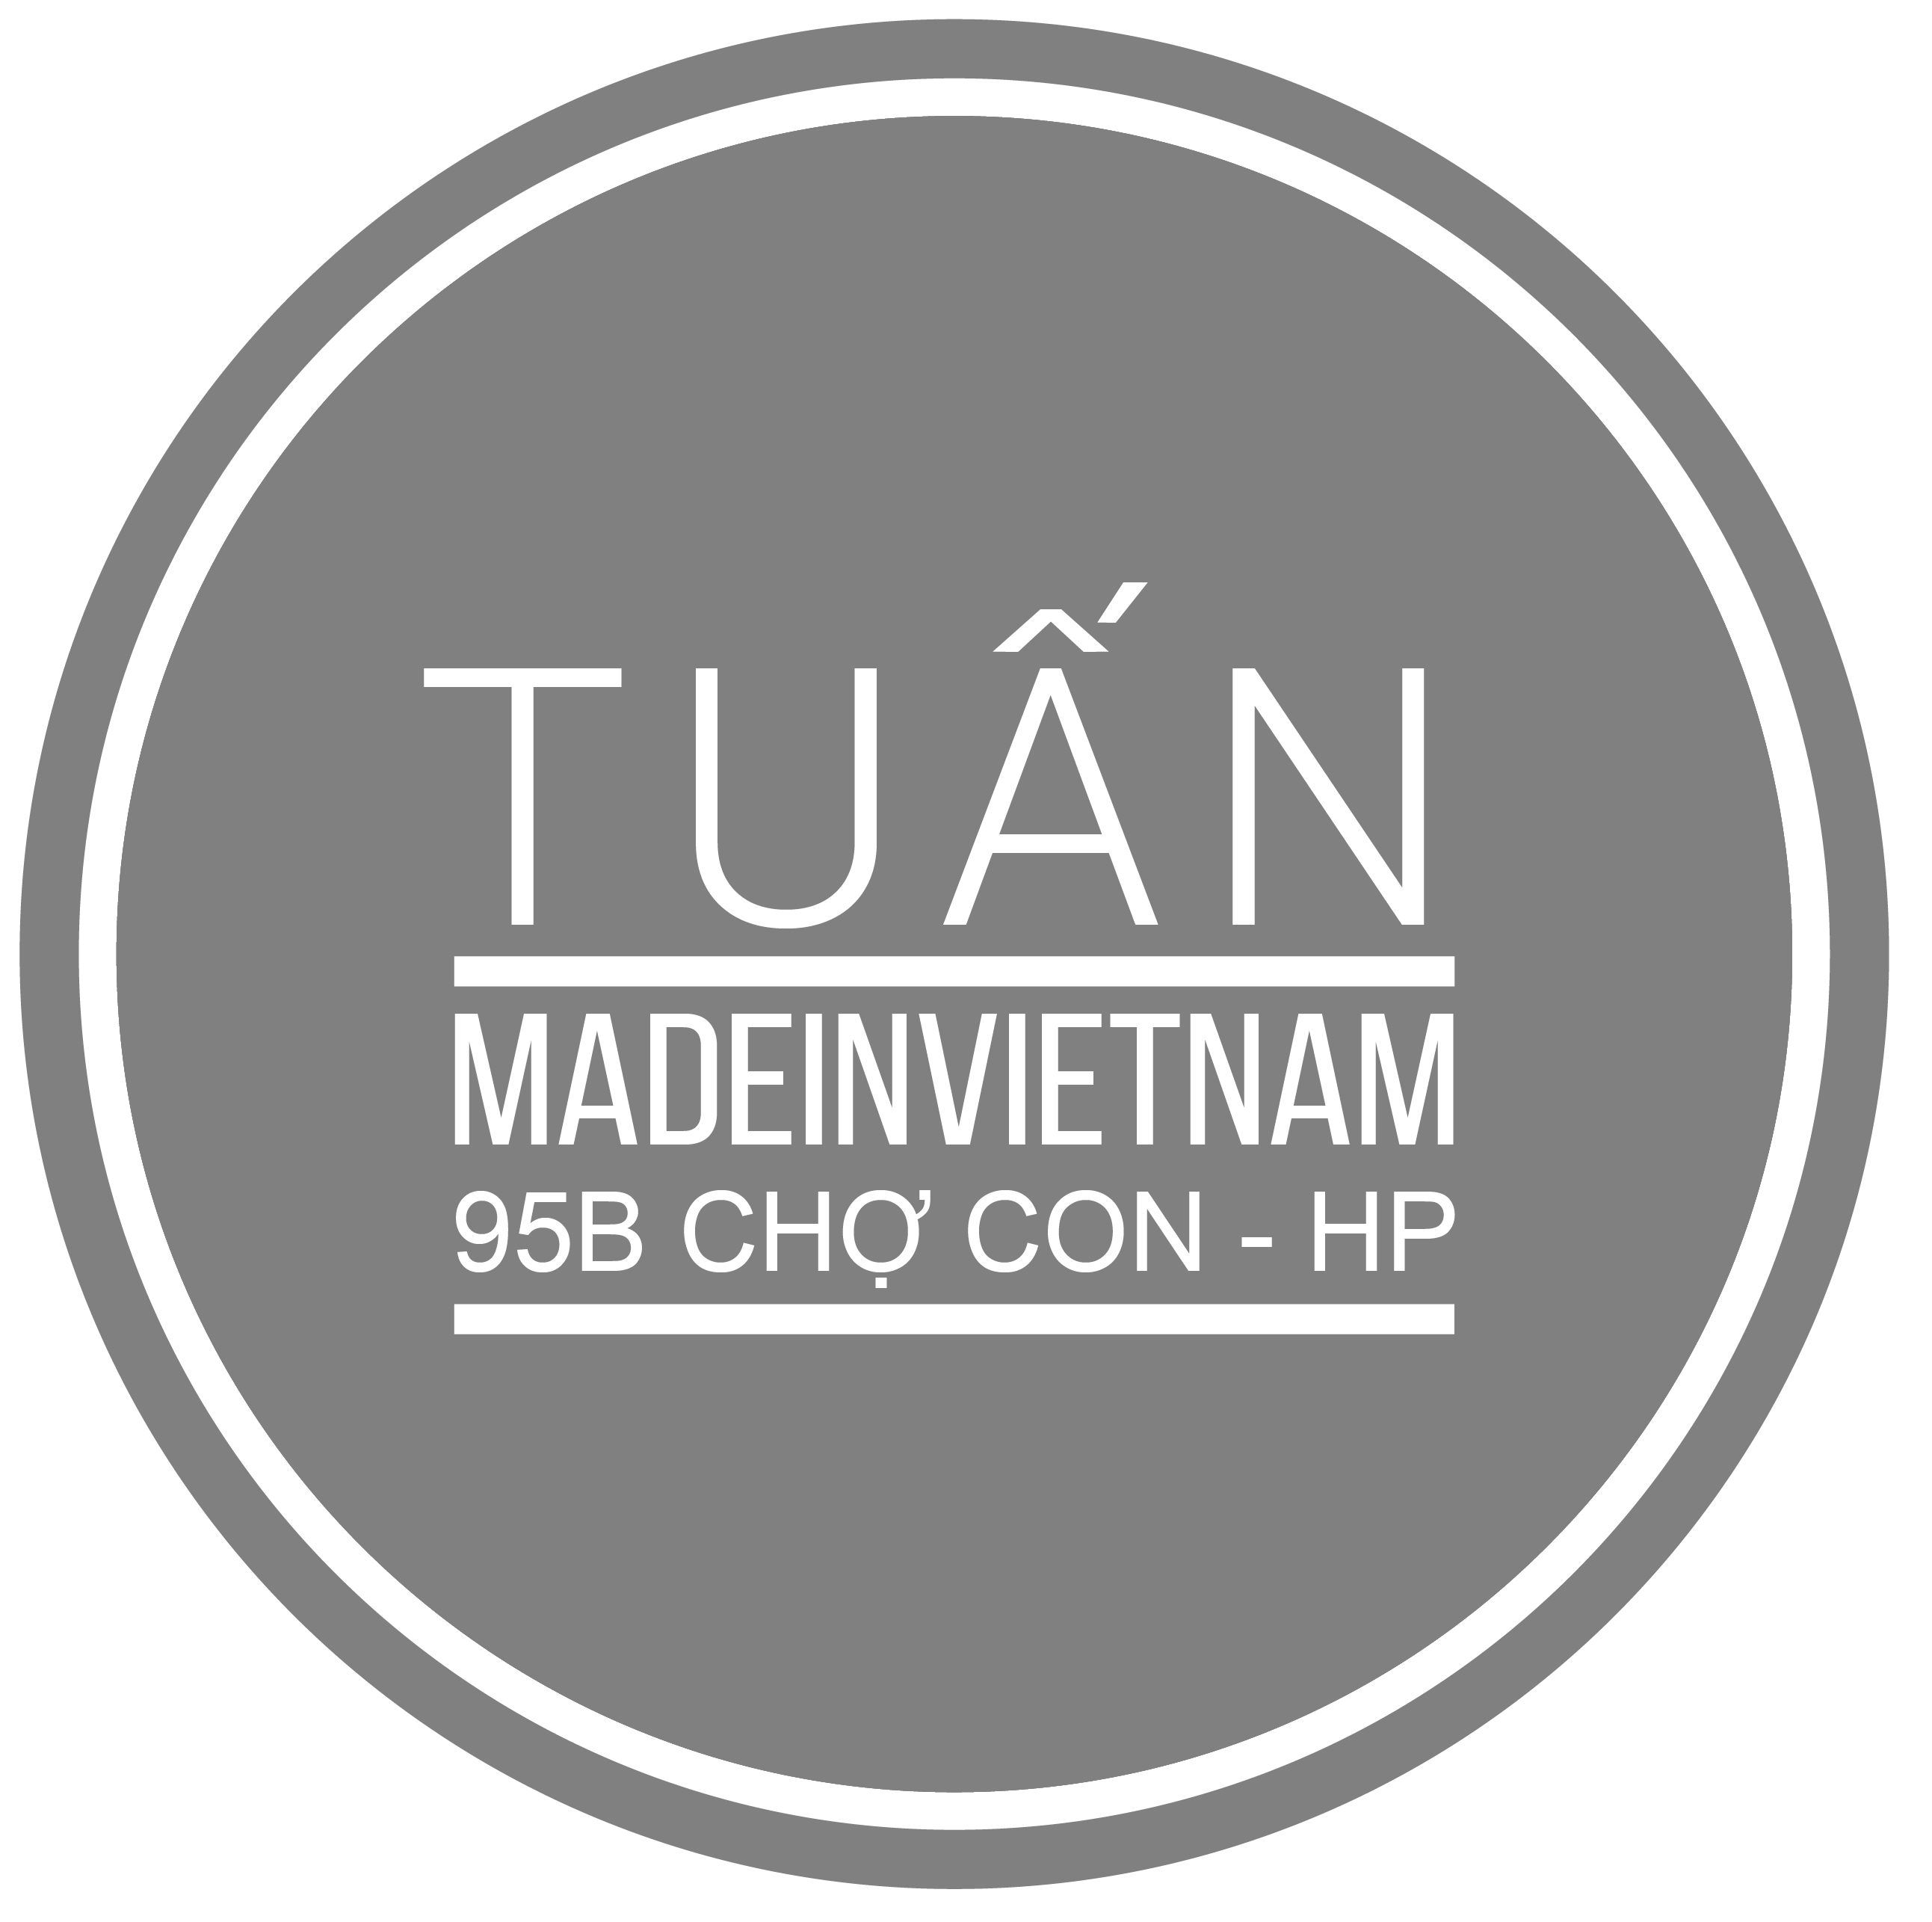 Tuấn made in VietNam